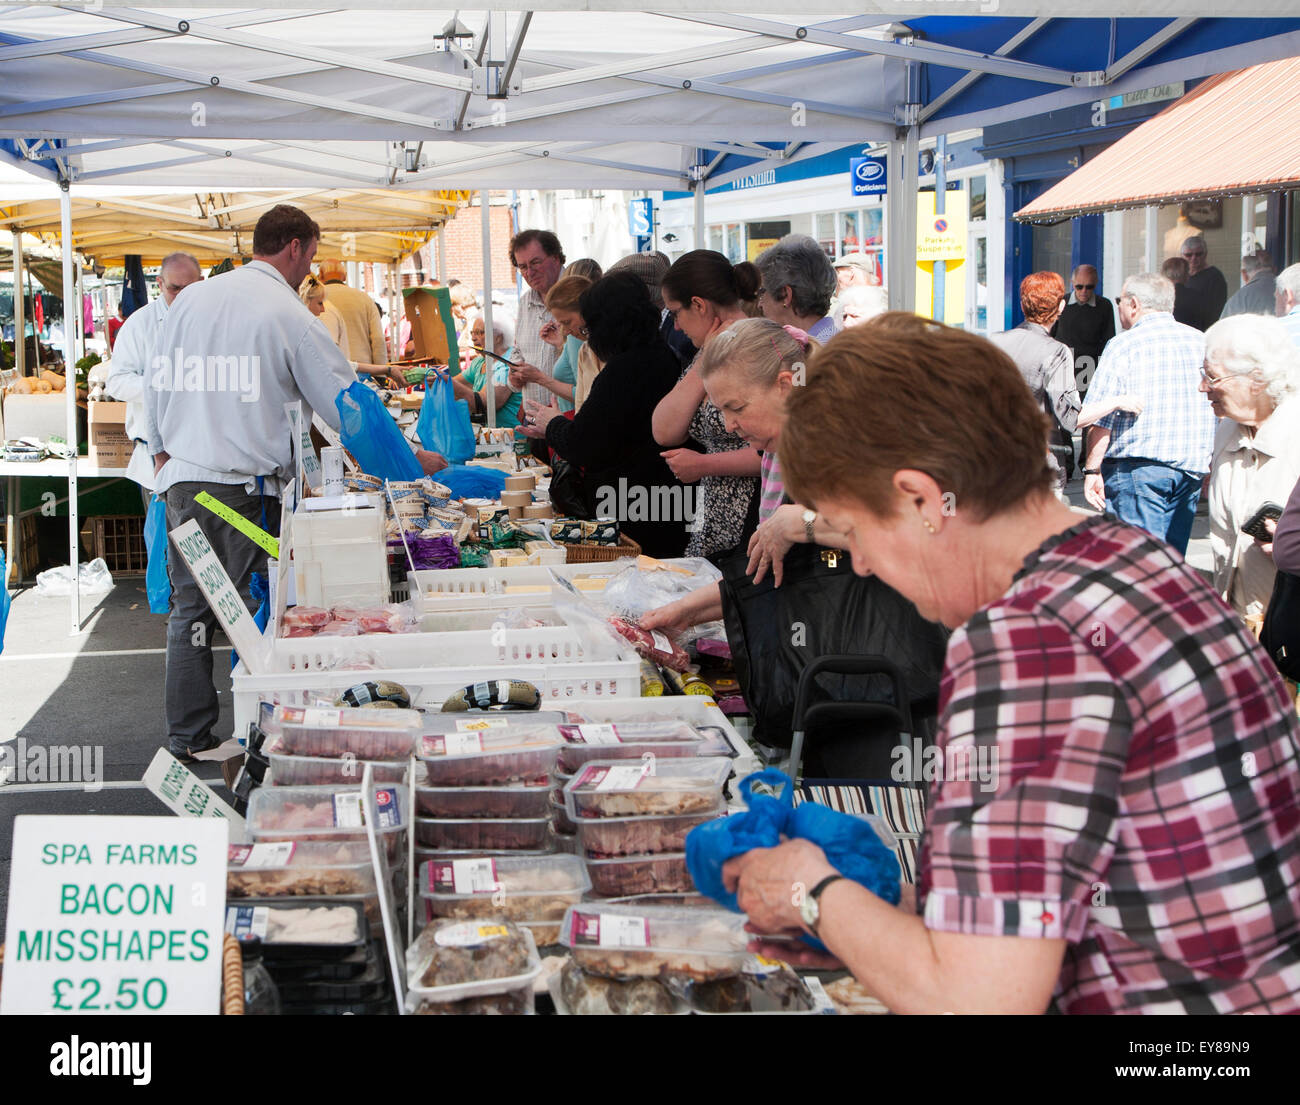 Persone navigando le bancarelle del mercato, Devizes, Wiltshire, Inghilterra, Regno Unito Foto Stock